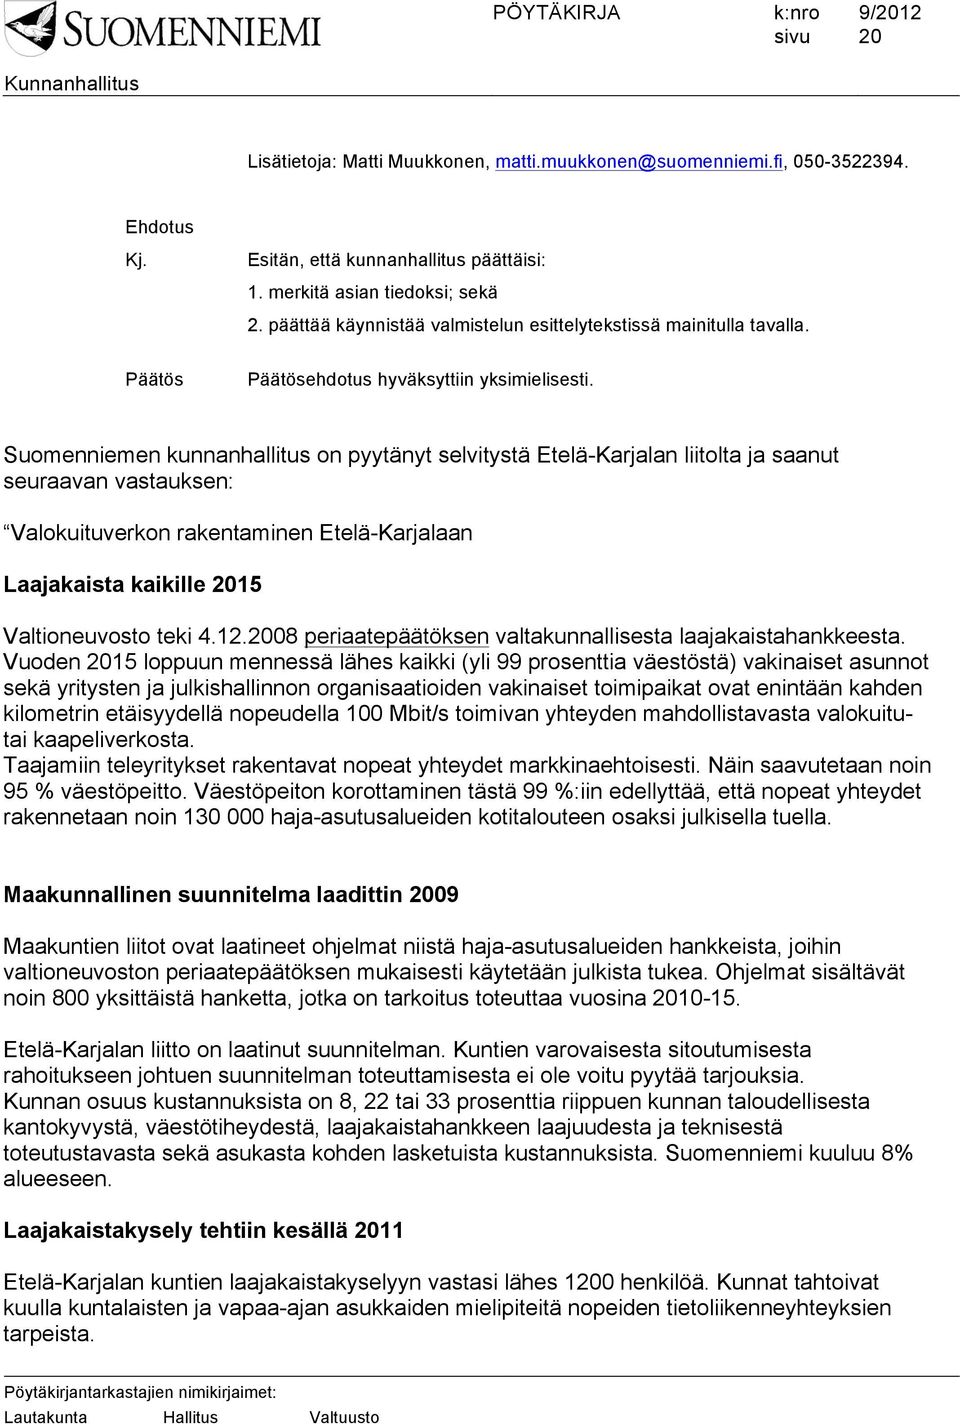 Suomenniemen kunnanhallitus on pyytänyt selvitystä Etelä-Karjalan liitolta ja saanut seuraavan vastauksen: Valokuituverkon rakentaminen Etelä-Karjalaan Laajakaista kaikille 2015 Valtioneuvosto teki 4.